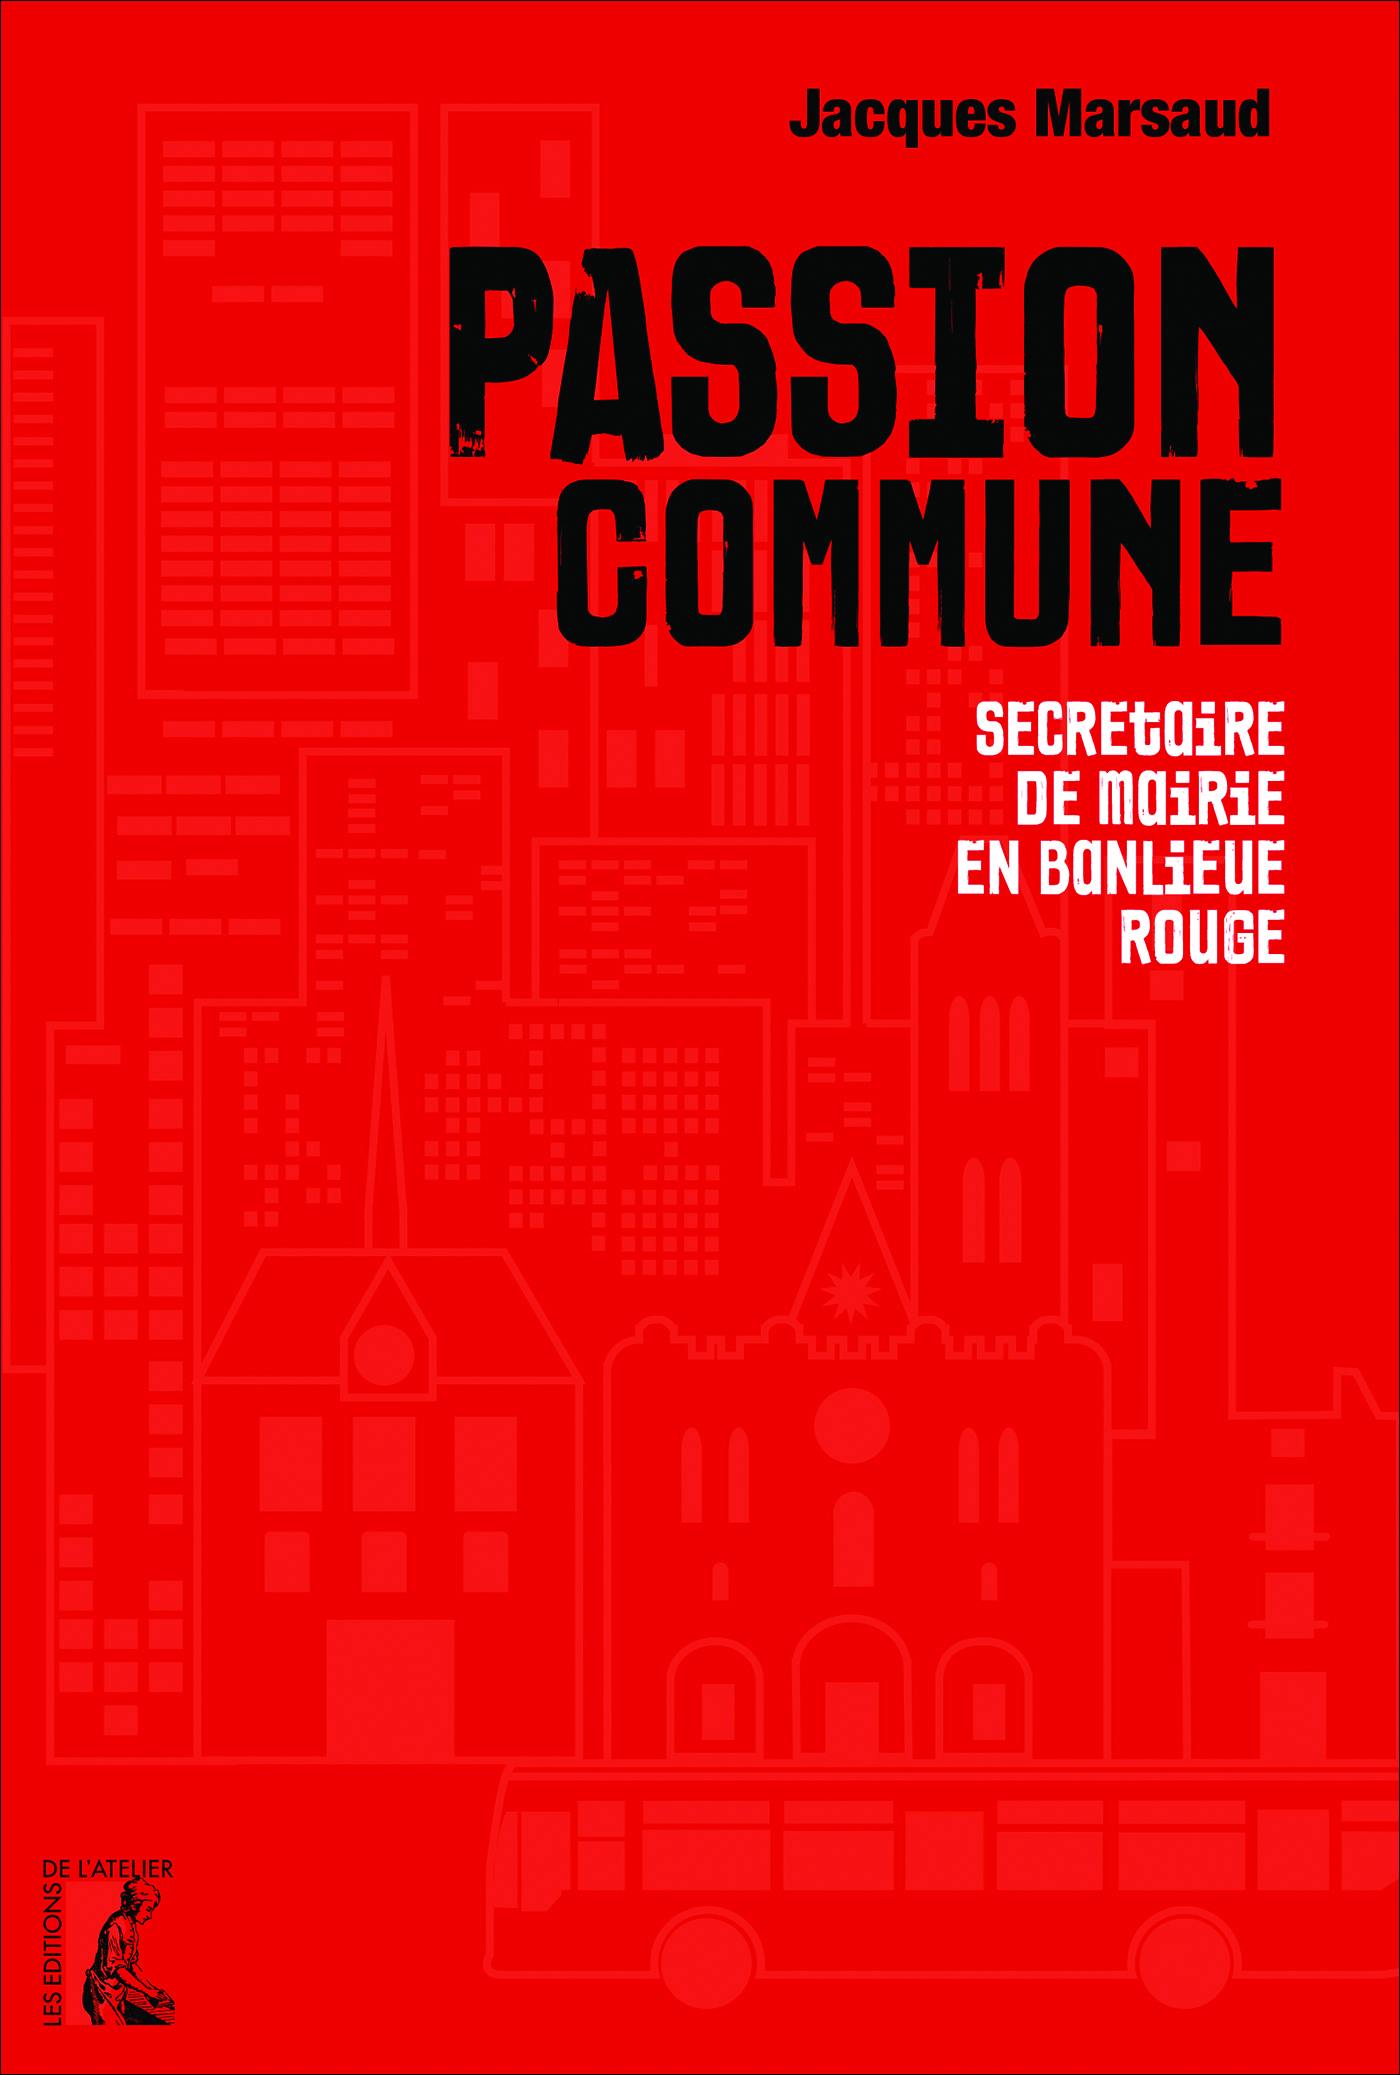 Passion commune - Jacques Marsaud - Éditions de l'Atelier